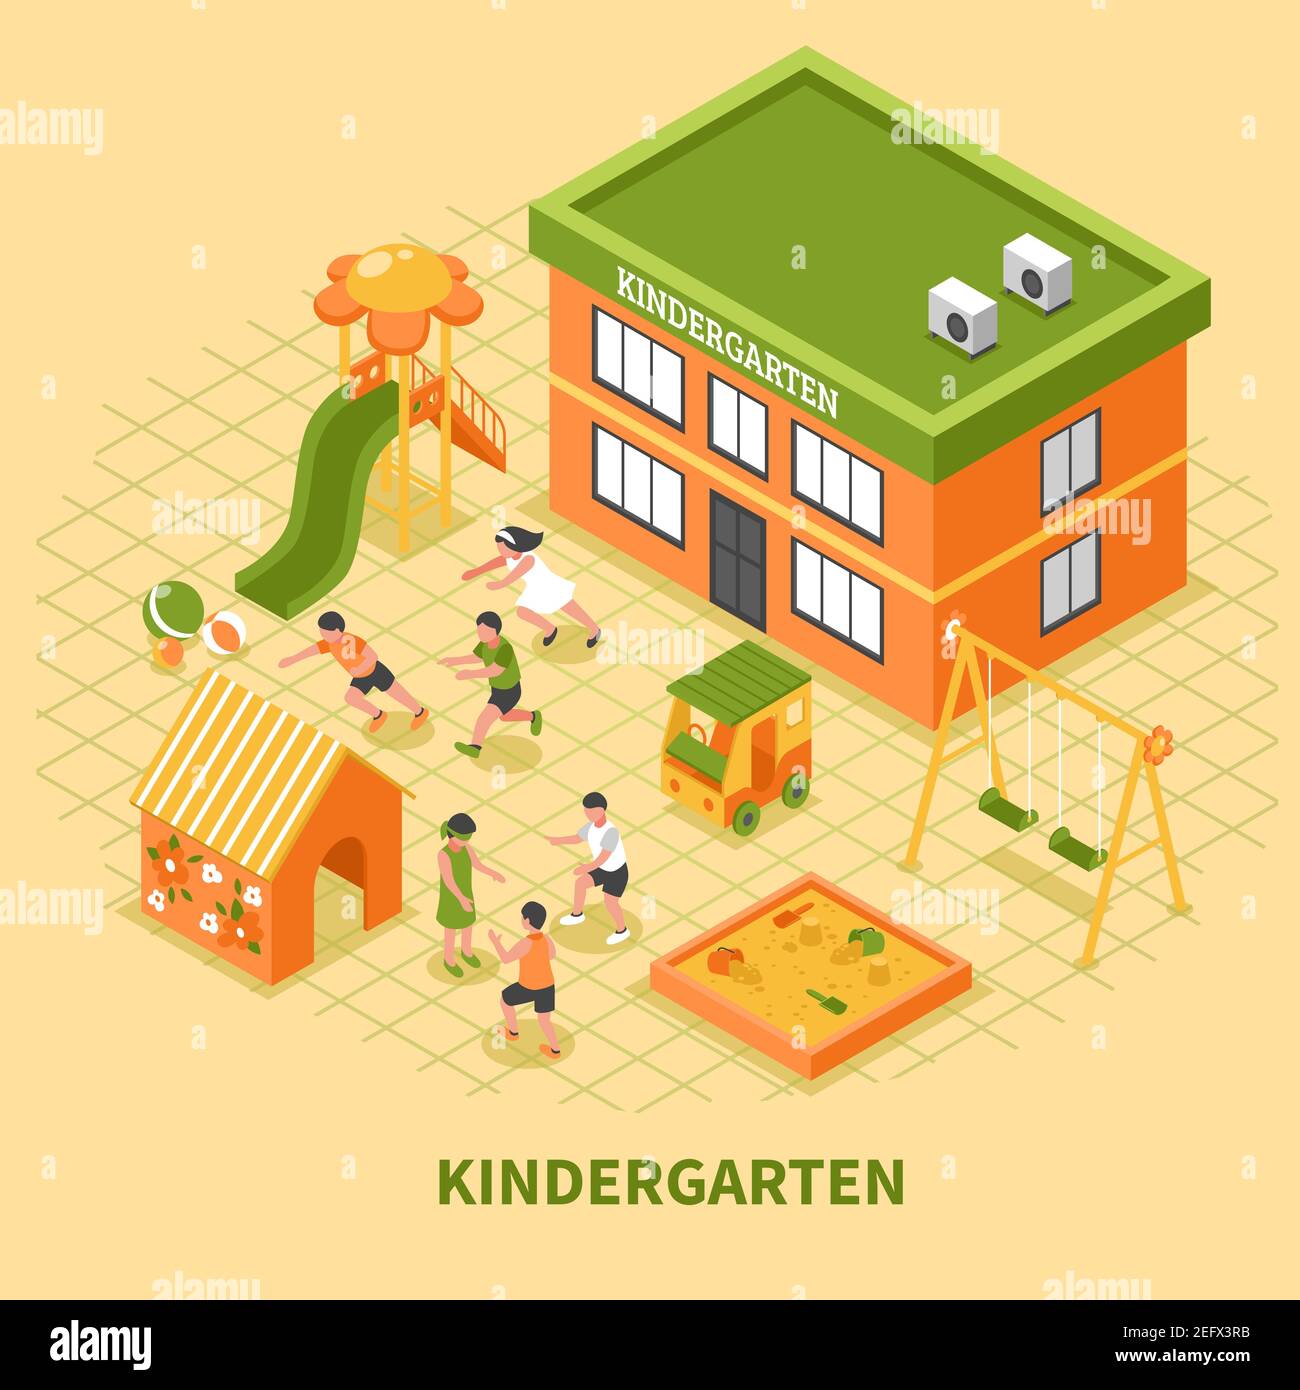 Kindergarten Gebäude isometrische Zusammensetzung mit Kindern Gruppe beschäftigt im Sport Und mobile Spiele auf Spielplatz Vektor Illustration Stock Vektor